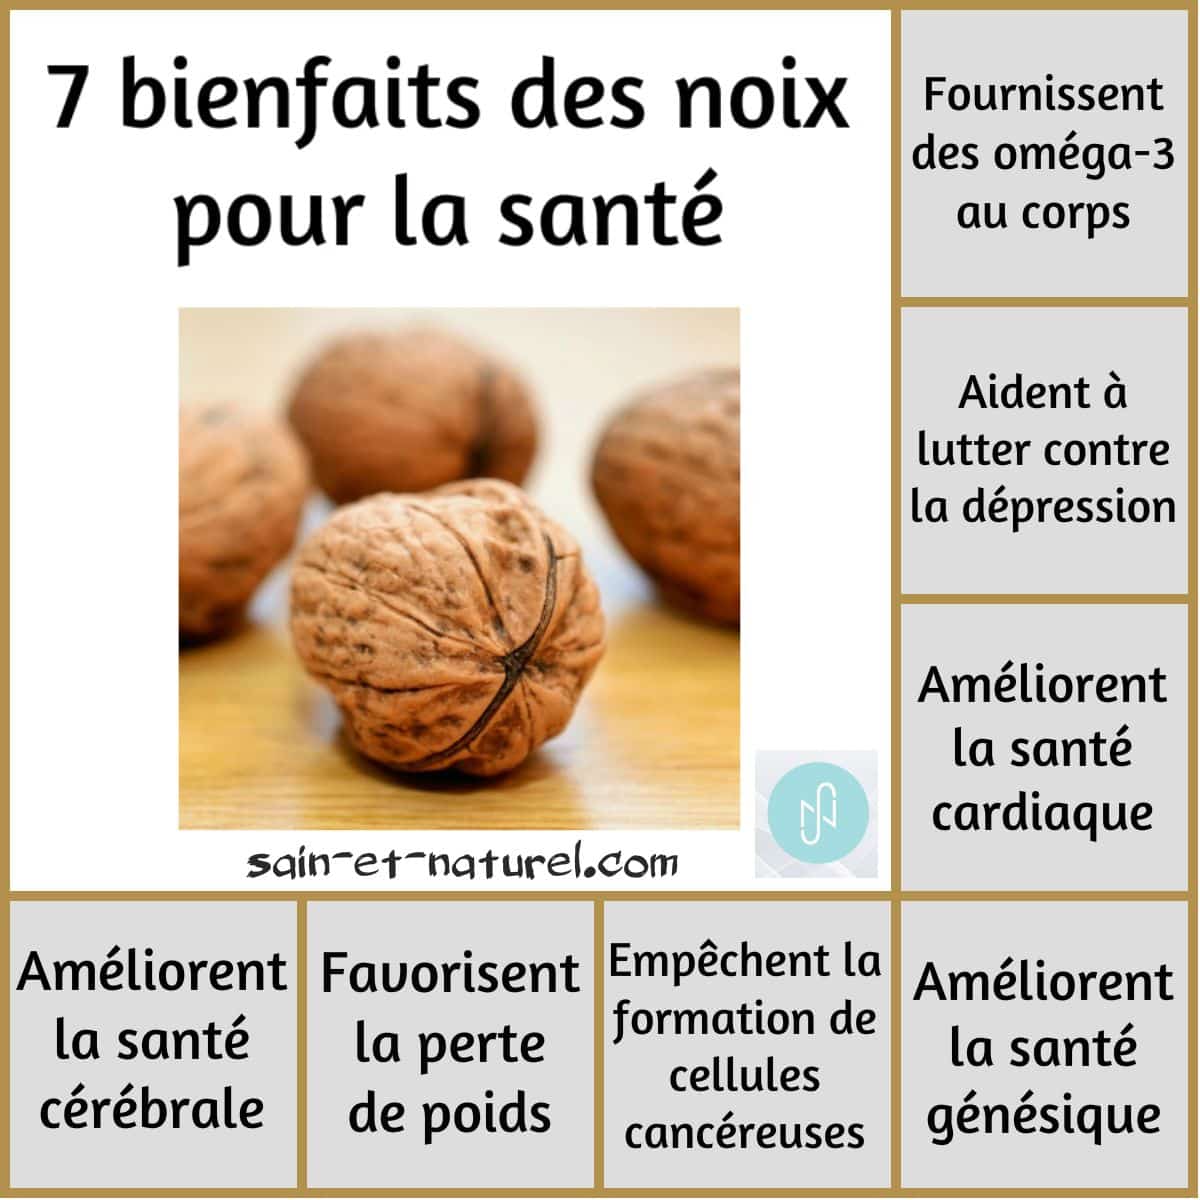 7 bienfaits des noix pour la santé